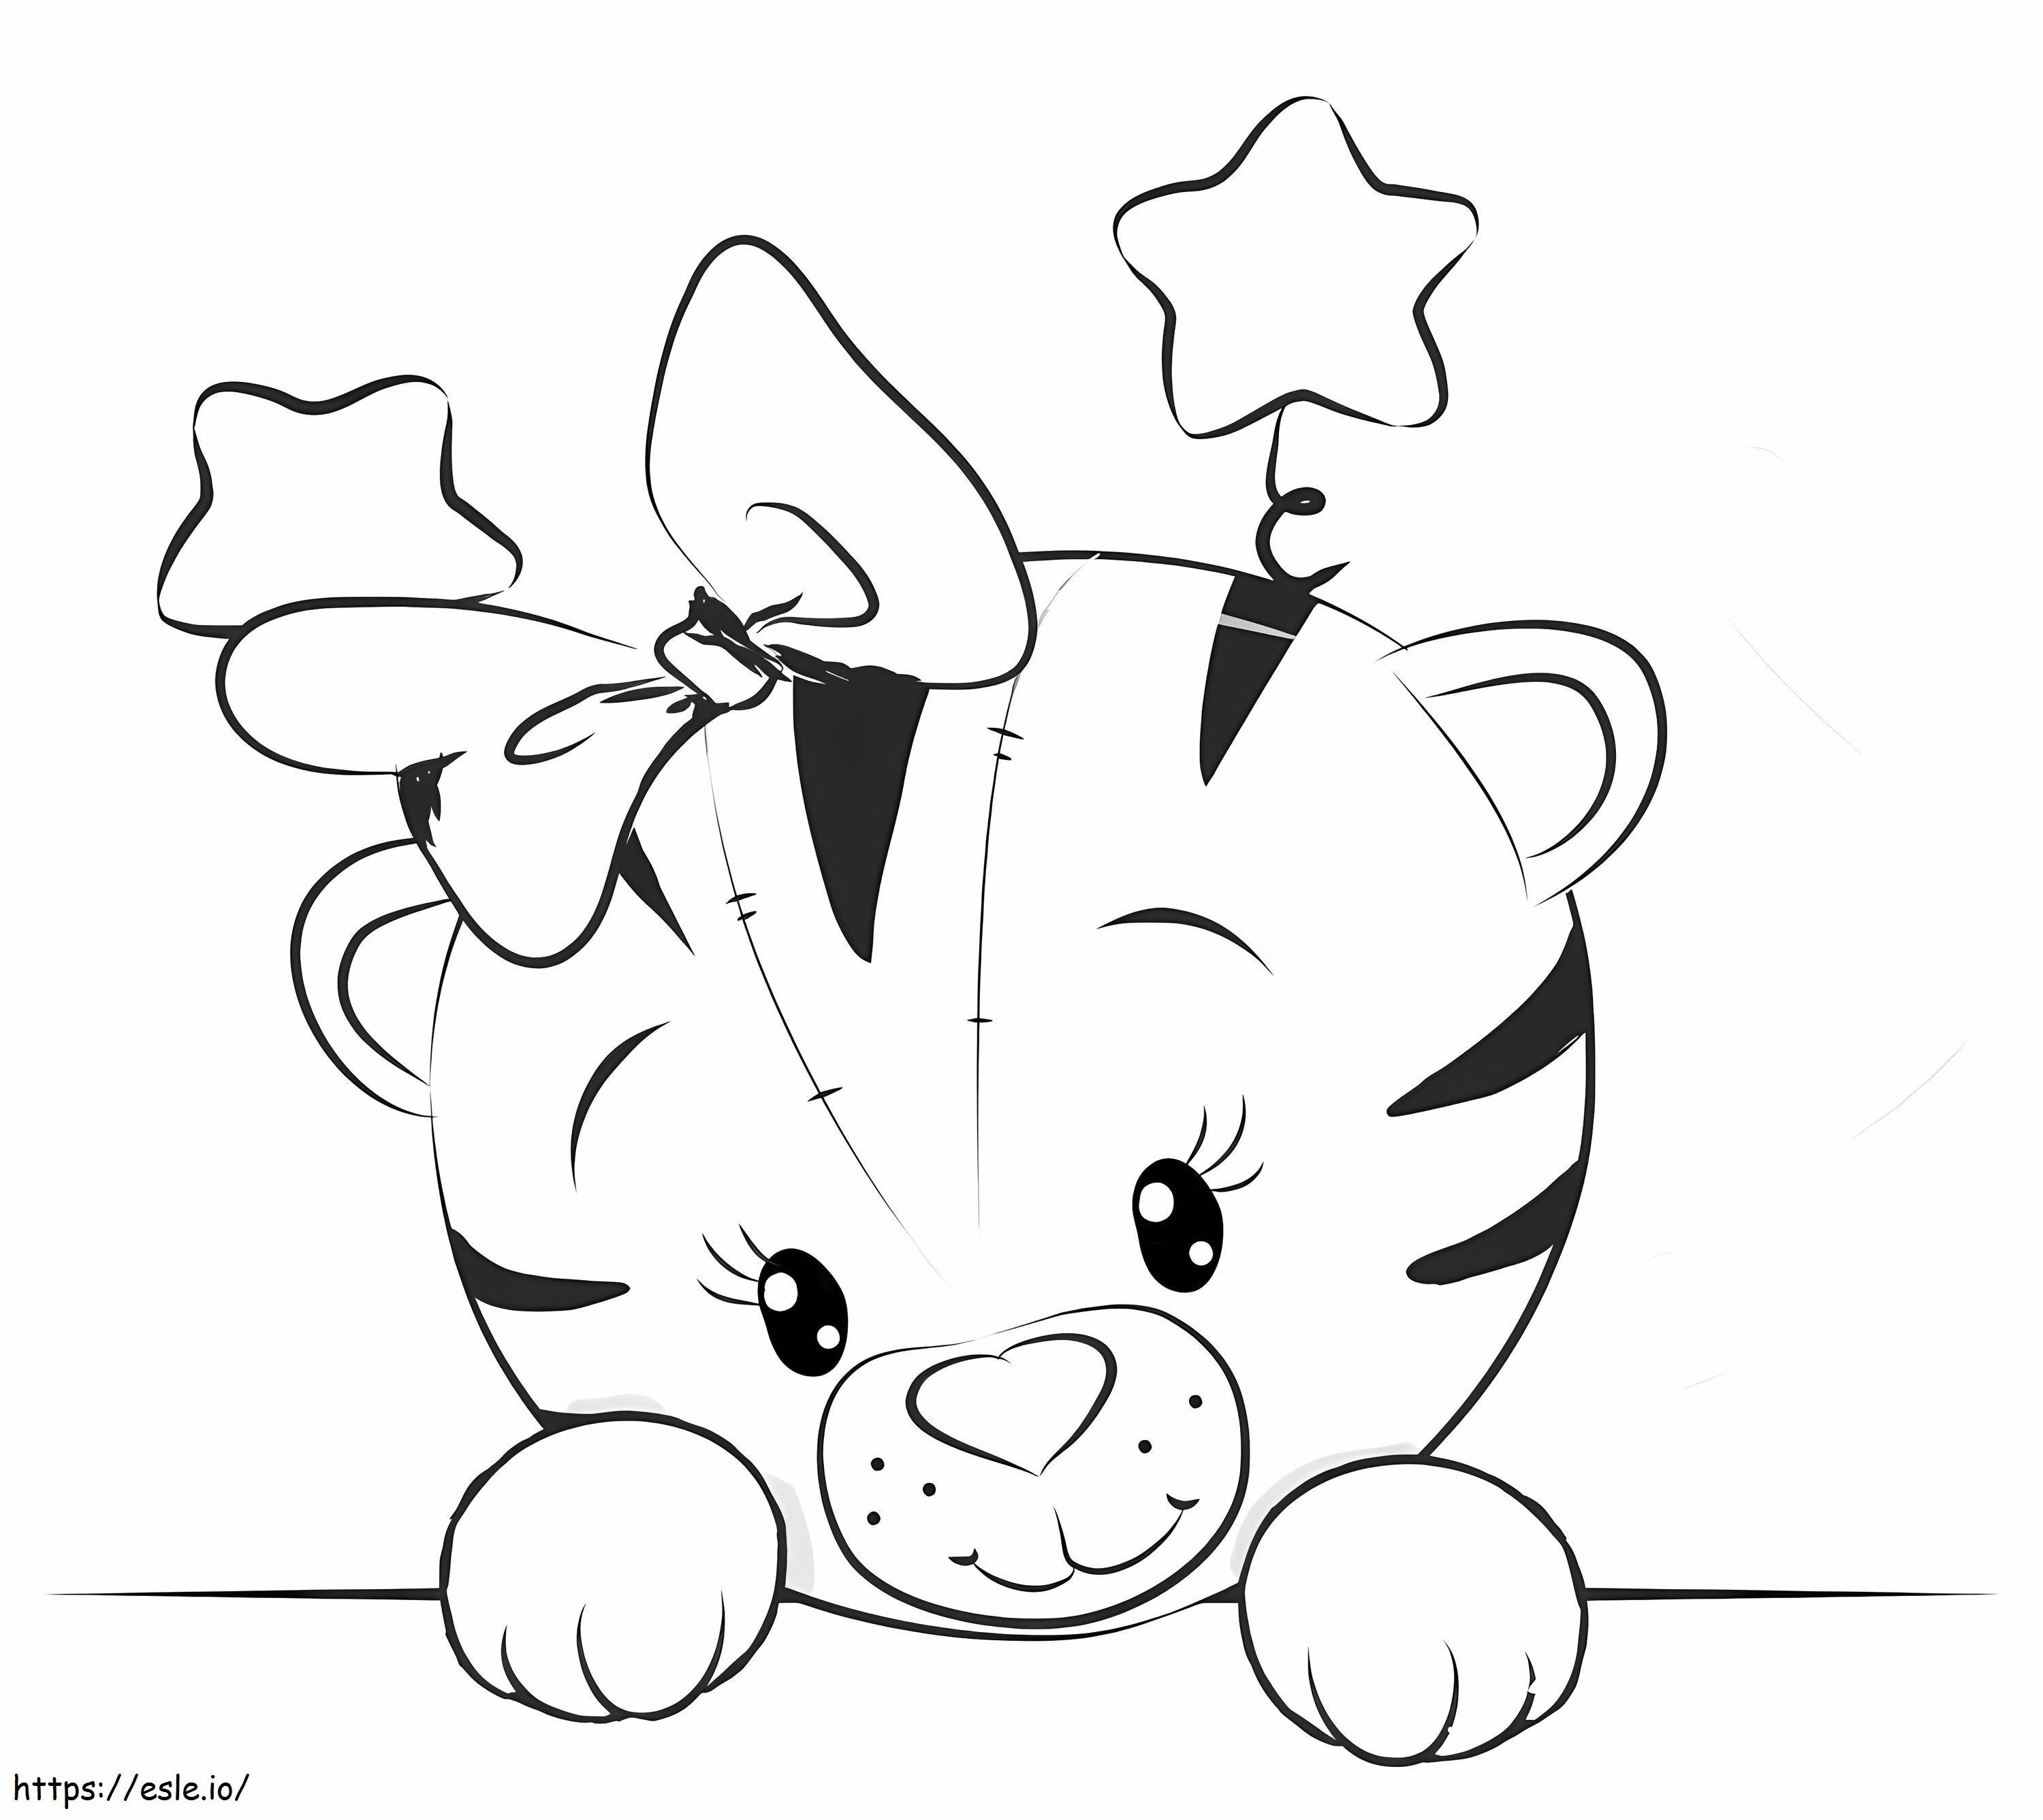  Schöner Cartoon-Tiger A4 ausmalbilder